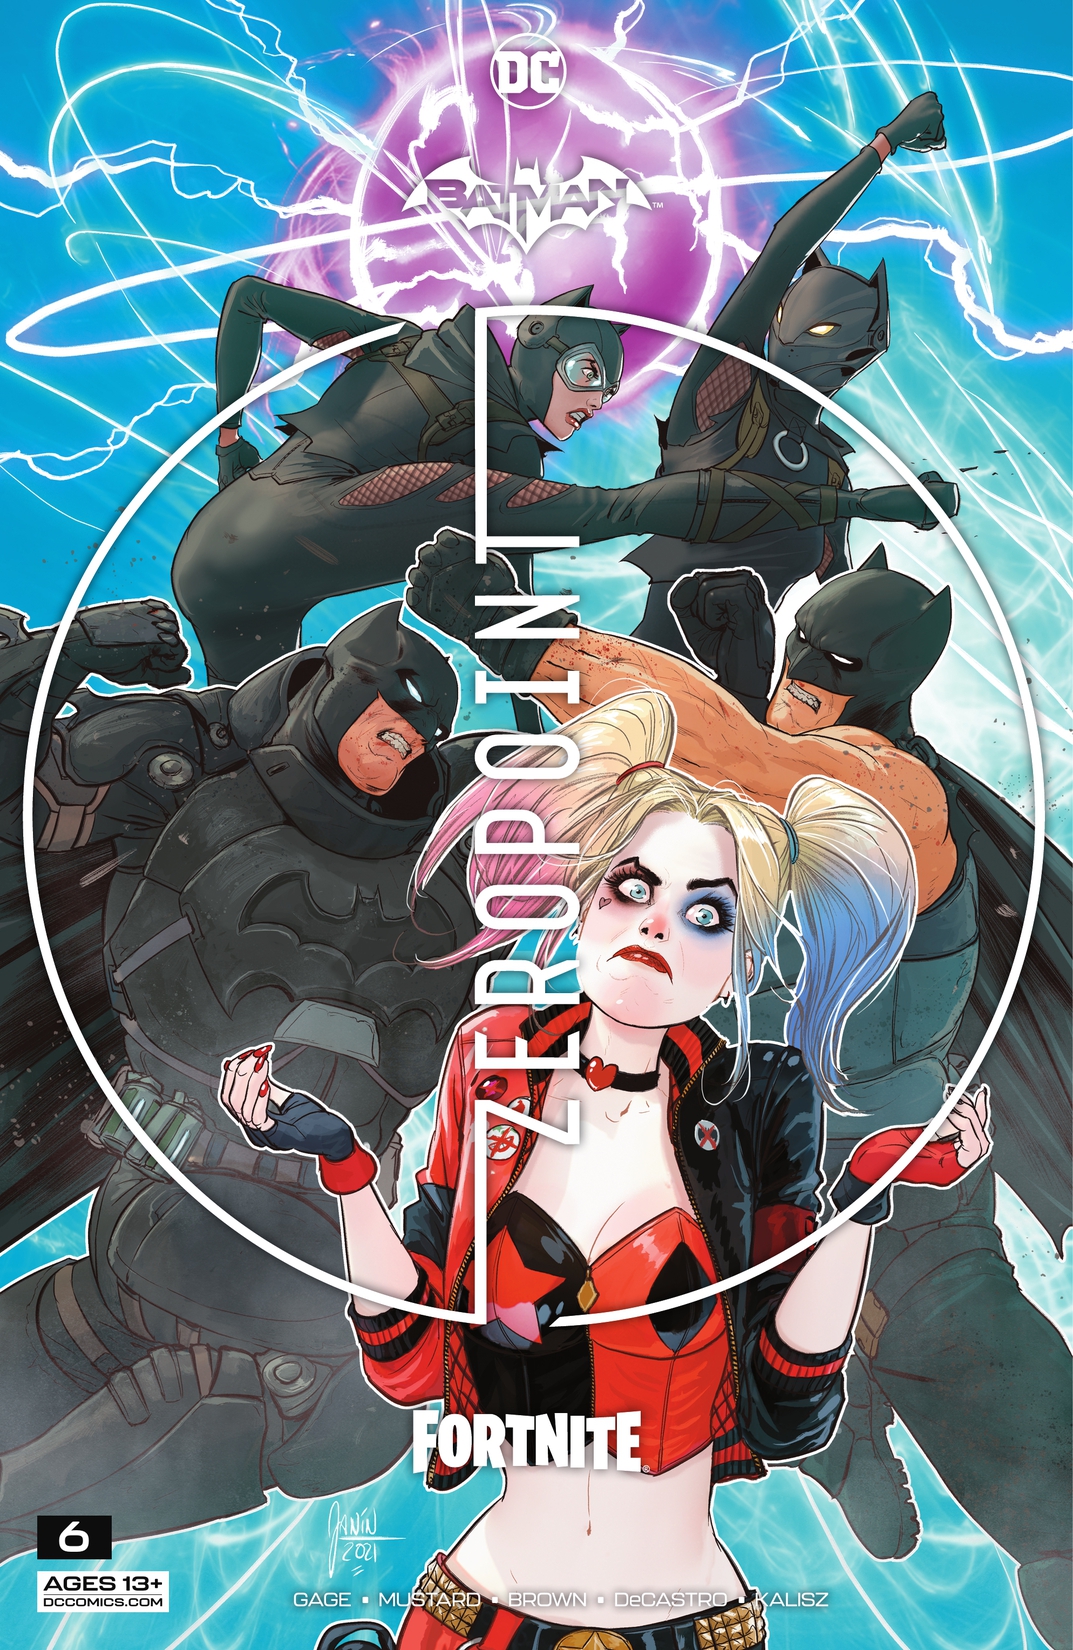 Batman/Fortnite: Zero Point #6 preview images